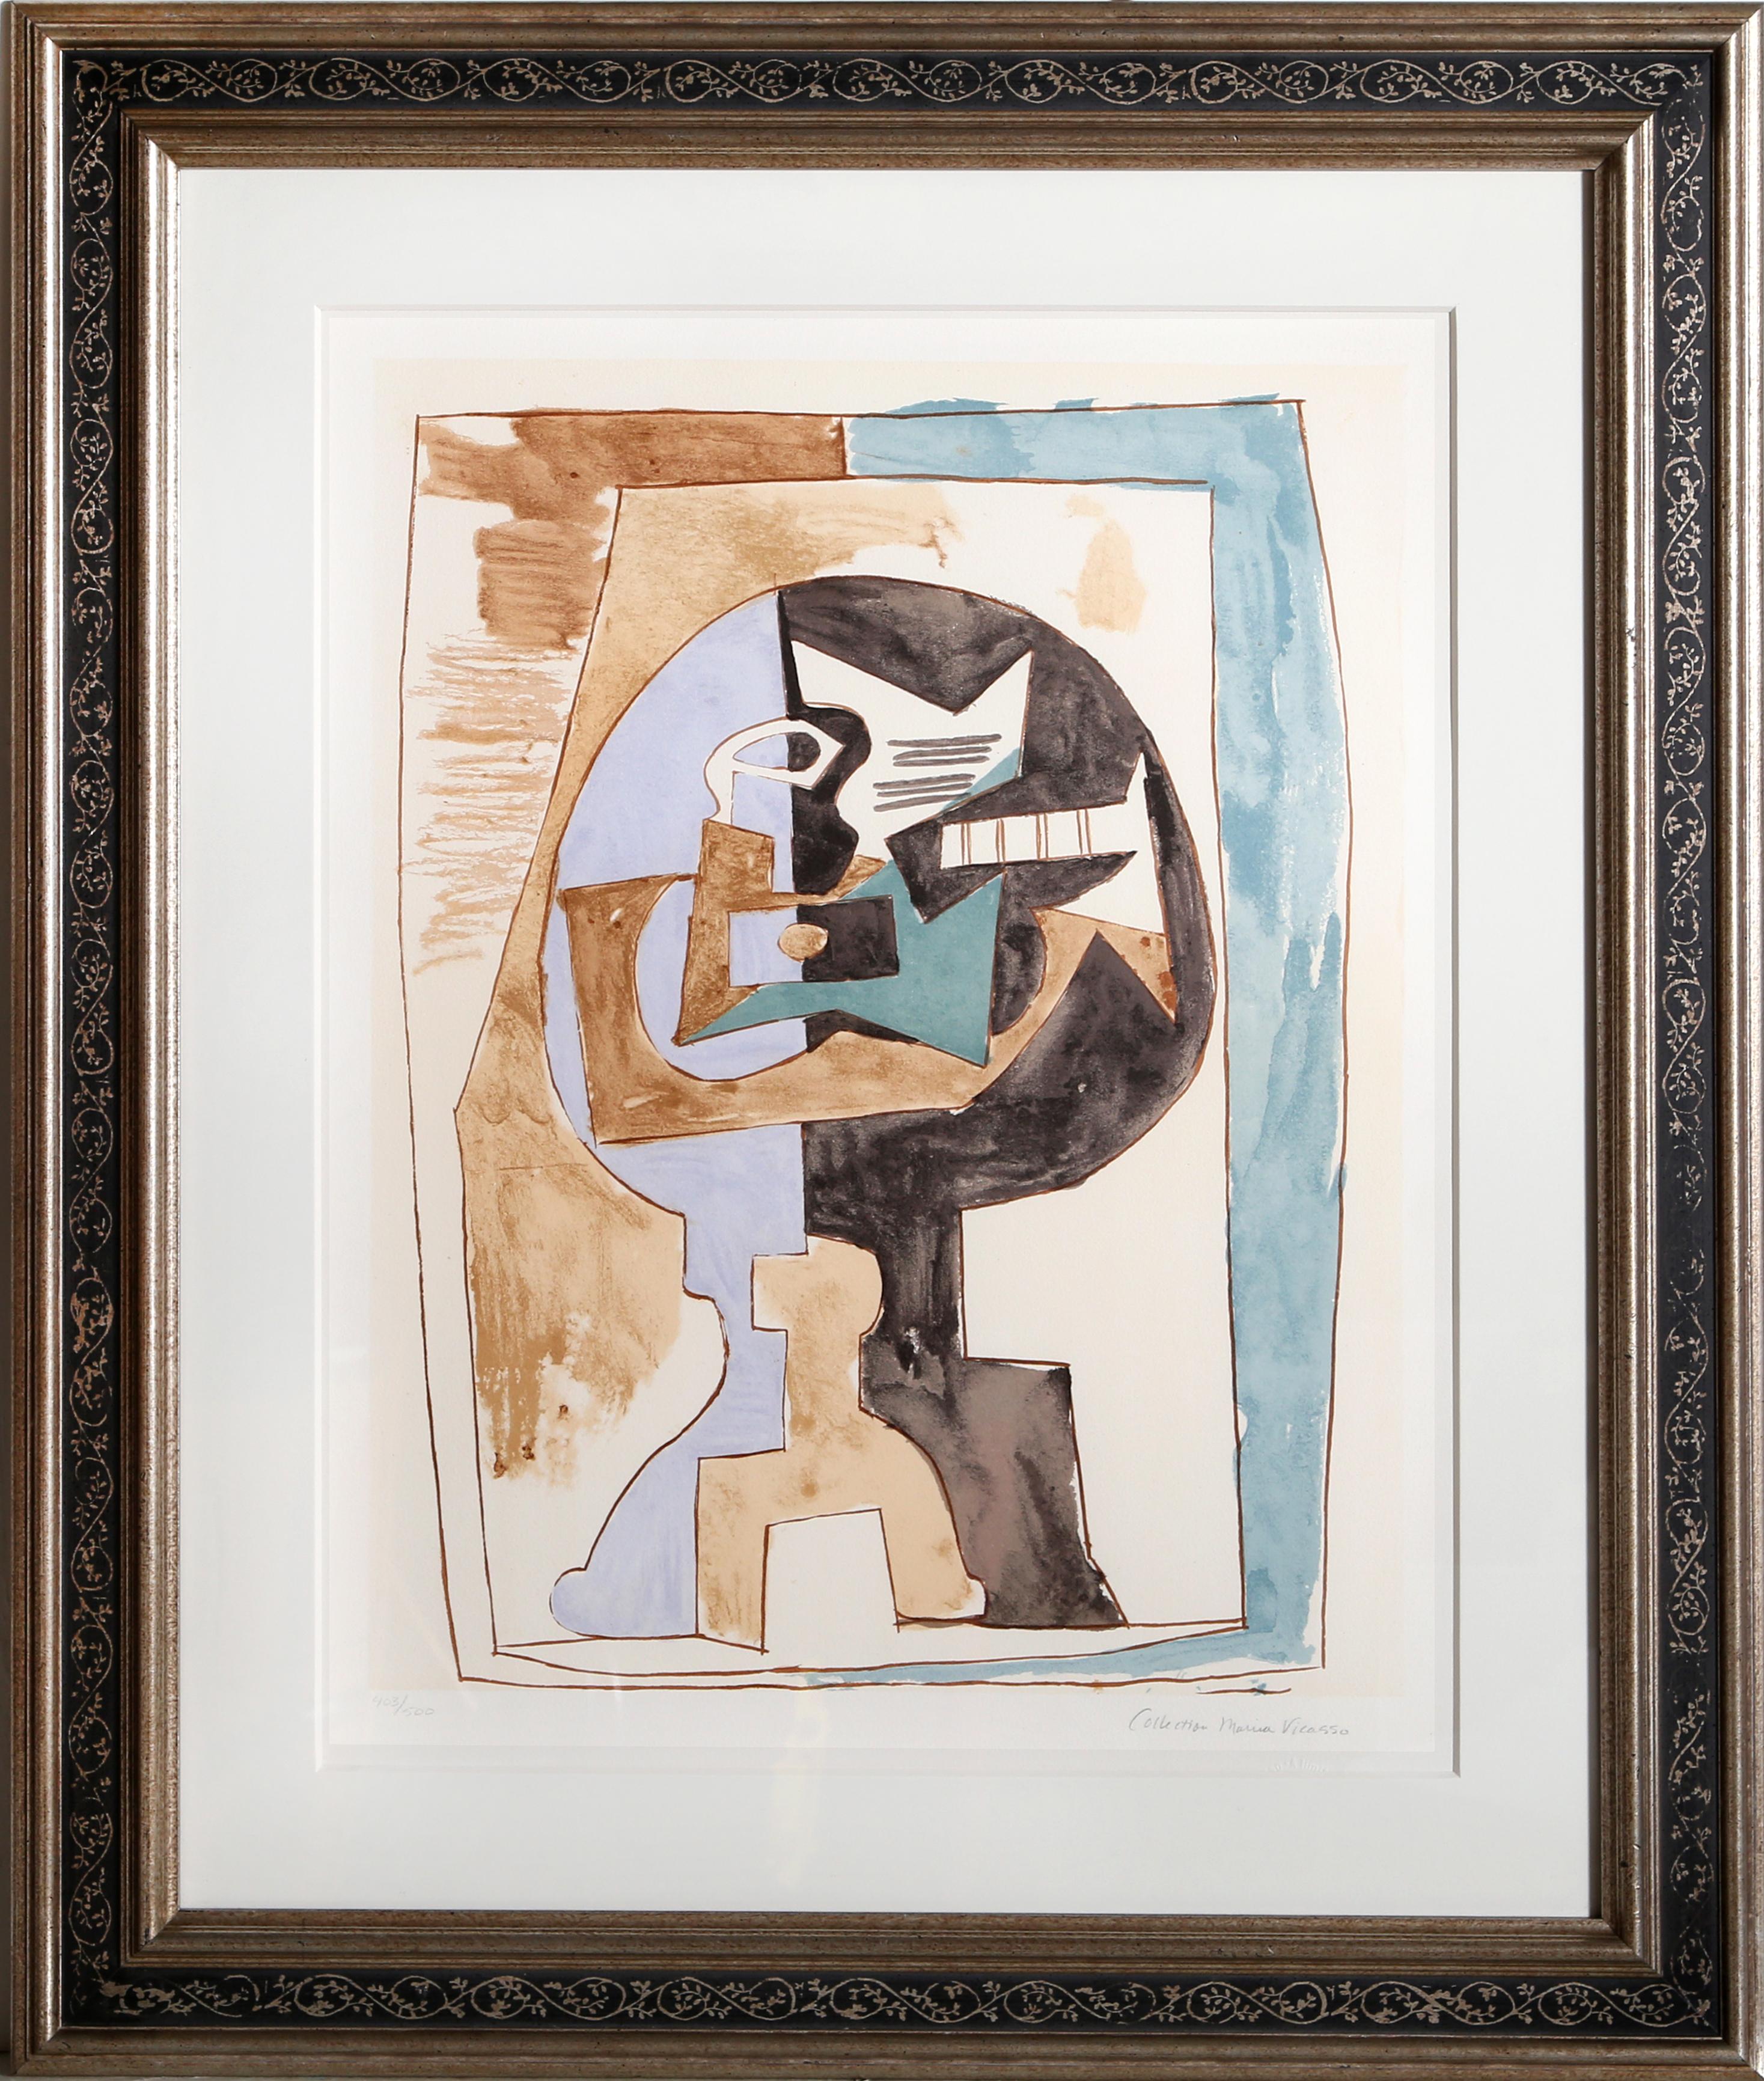 Une lithographie provenant de la Collection SALE de Marina Picasso d'après le tableau de Pablo Picasso "Guéridon et Guitare". La peinture originale a été achevée en 1920. Dans les années 1970, après la mort de Picasso, Marina Picasso, sa